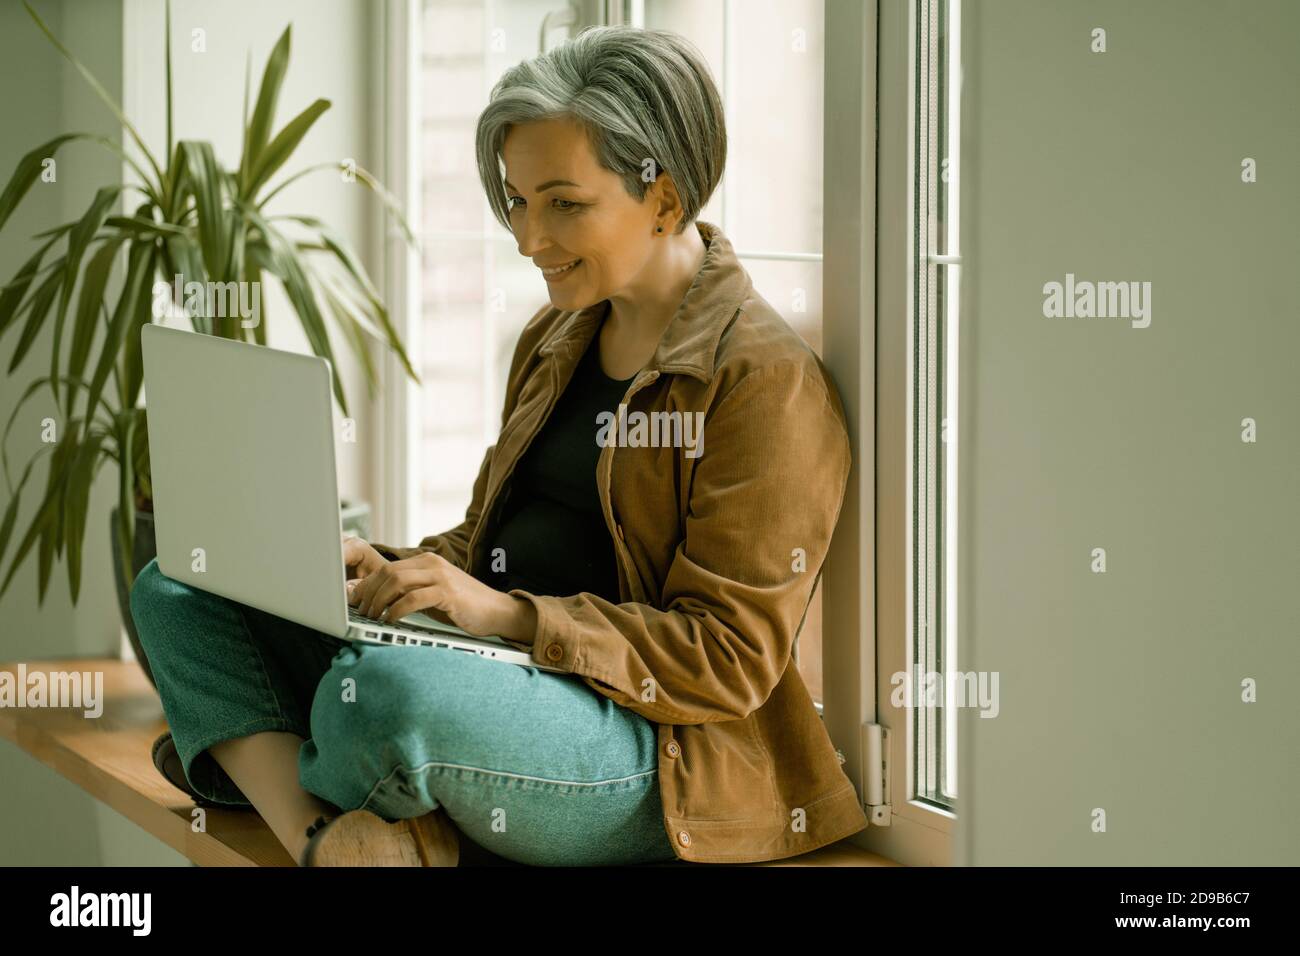 Lächelnd reife Frau schaut auf Web-Kamera Teilnahme an Virtuelle Video-Chat oder Arbeit mit dem Computer oder während des Sitzens Mit dem Rücken gegen das Fenster Stockfoto